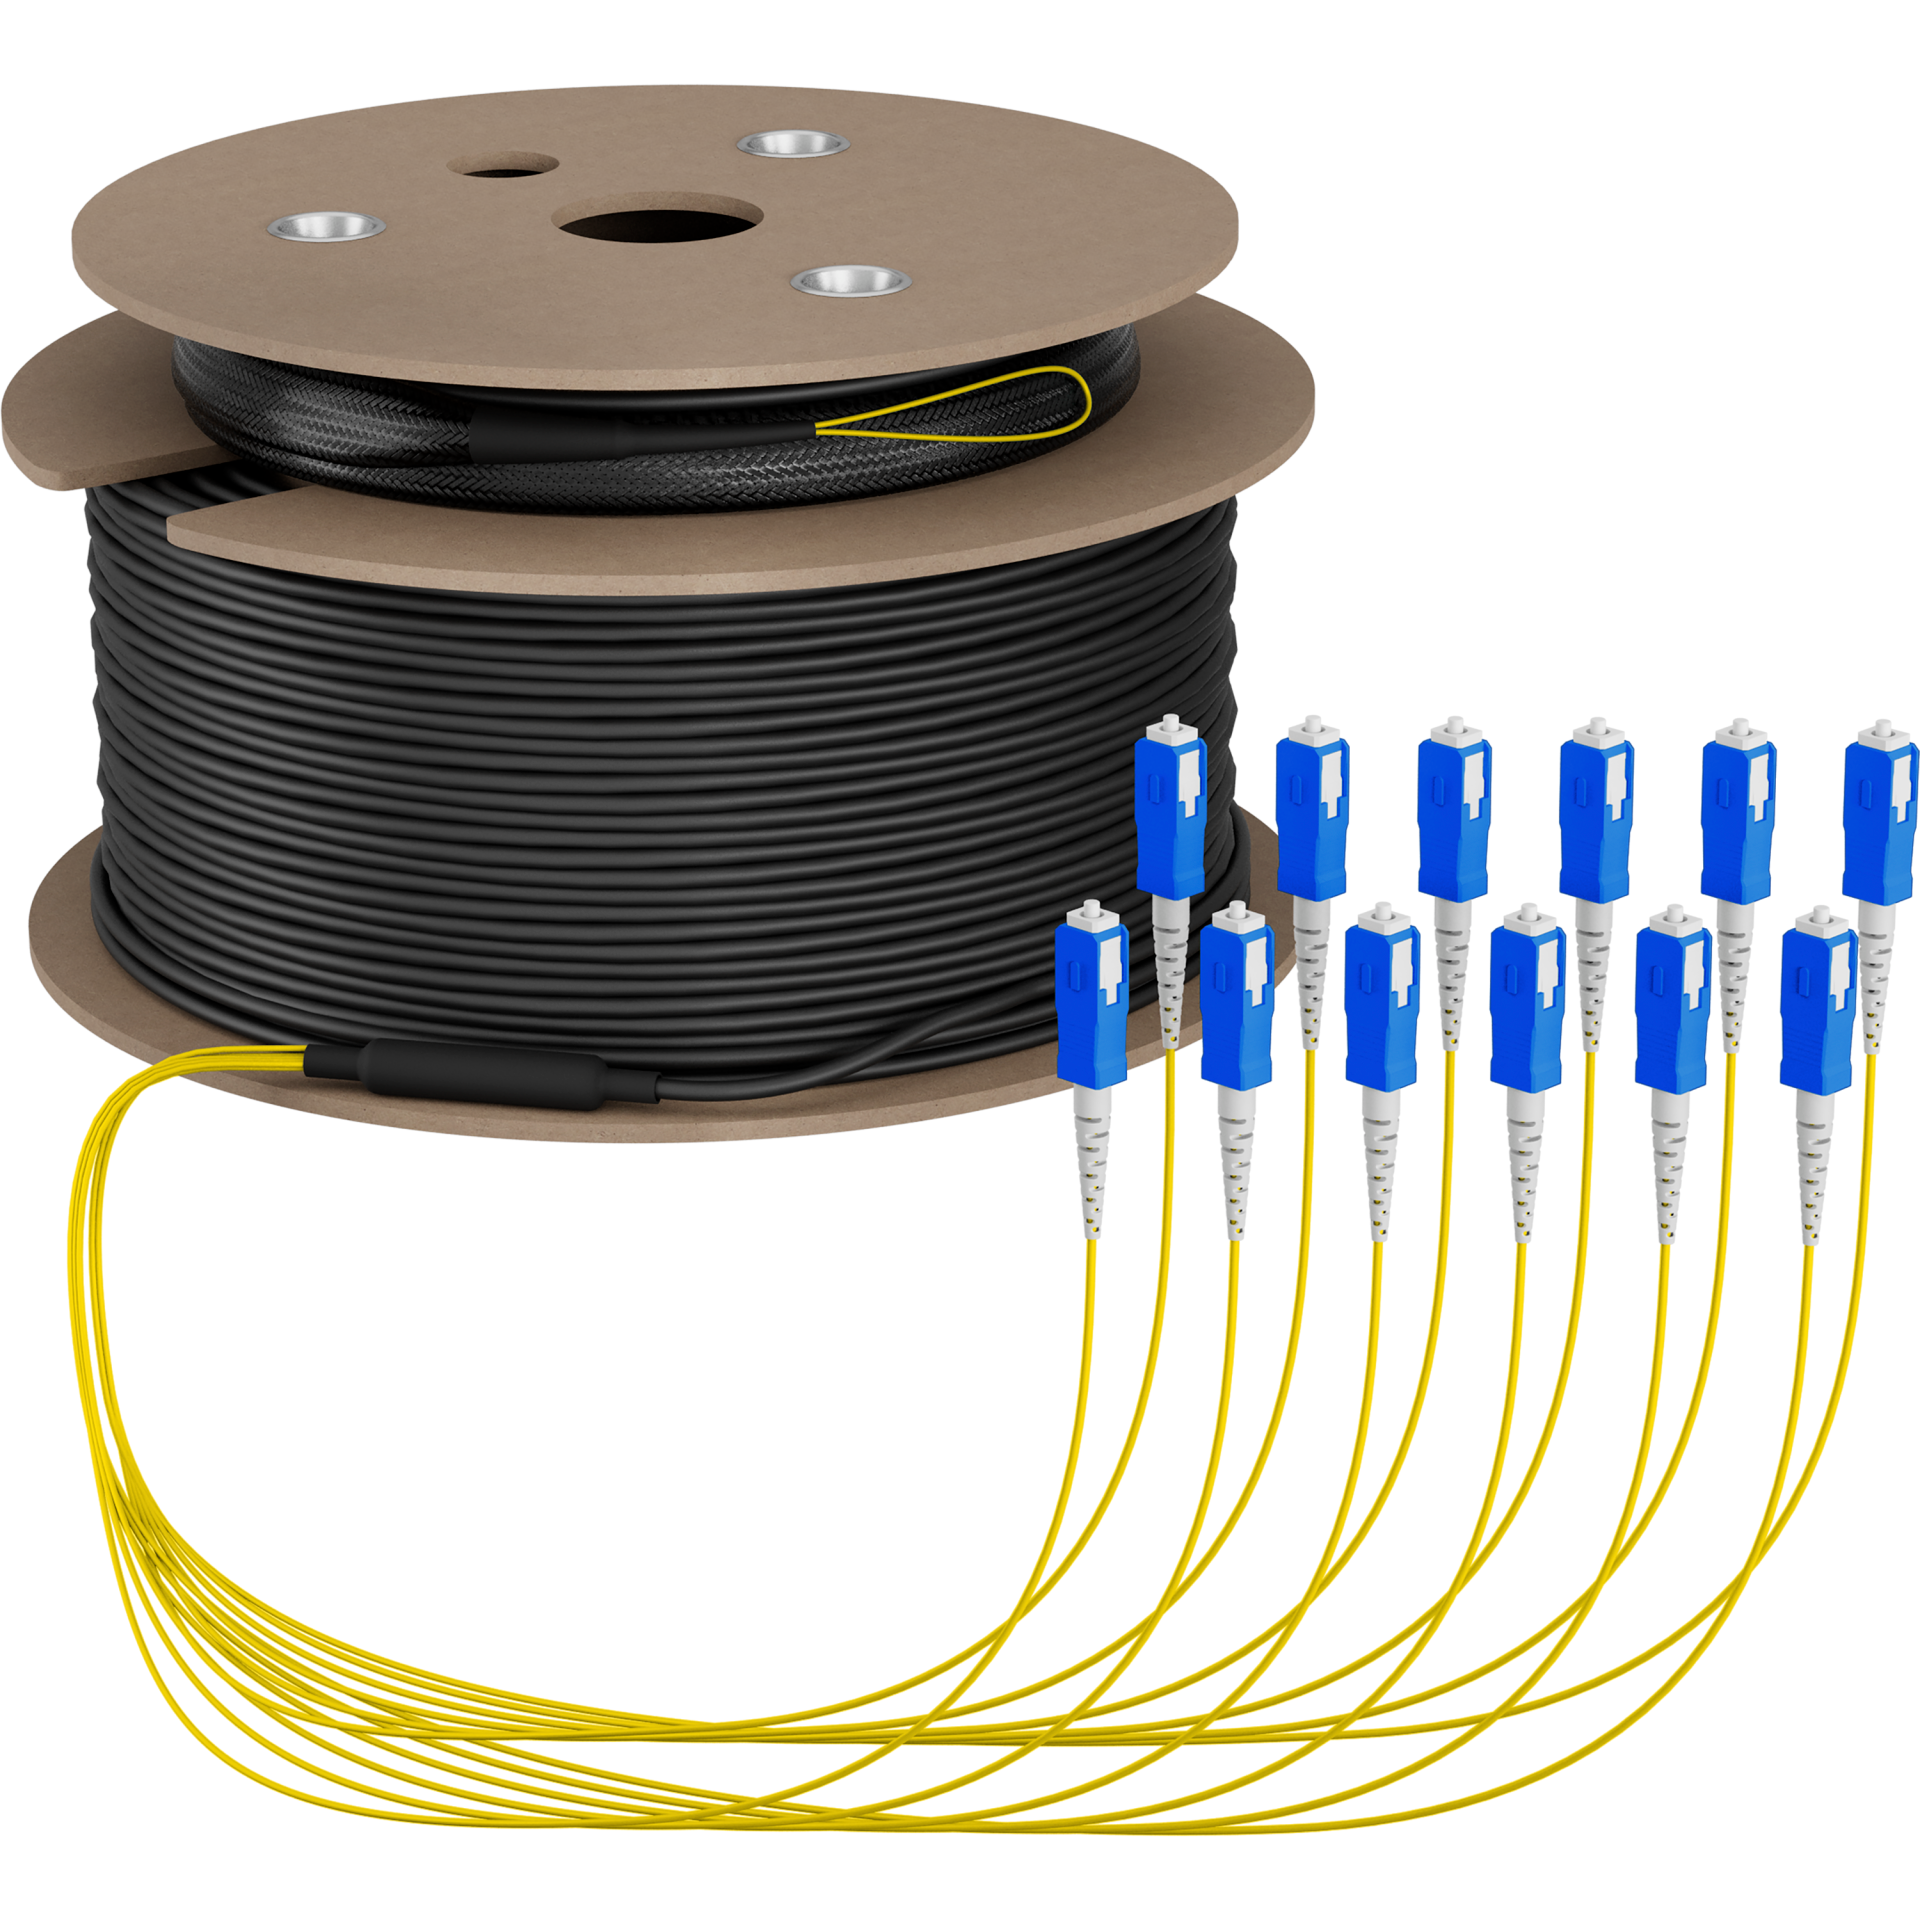 Trunk cable U-DQ(ZN)BH OS2 12E (1x12) SC-SC,110m Dca LSZH